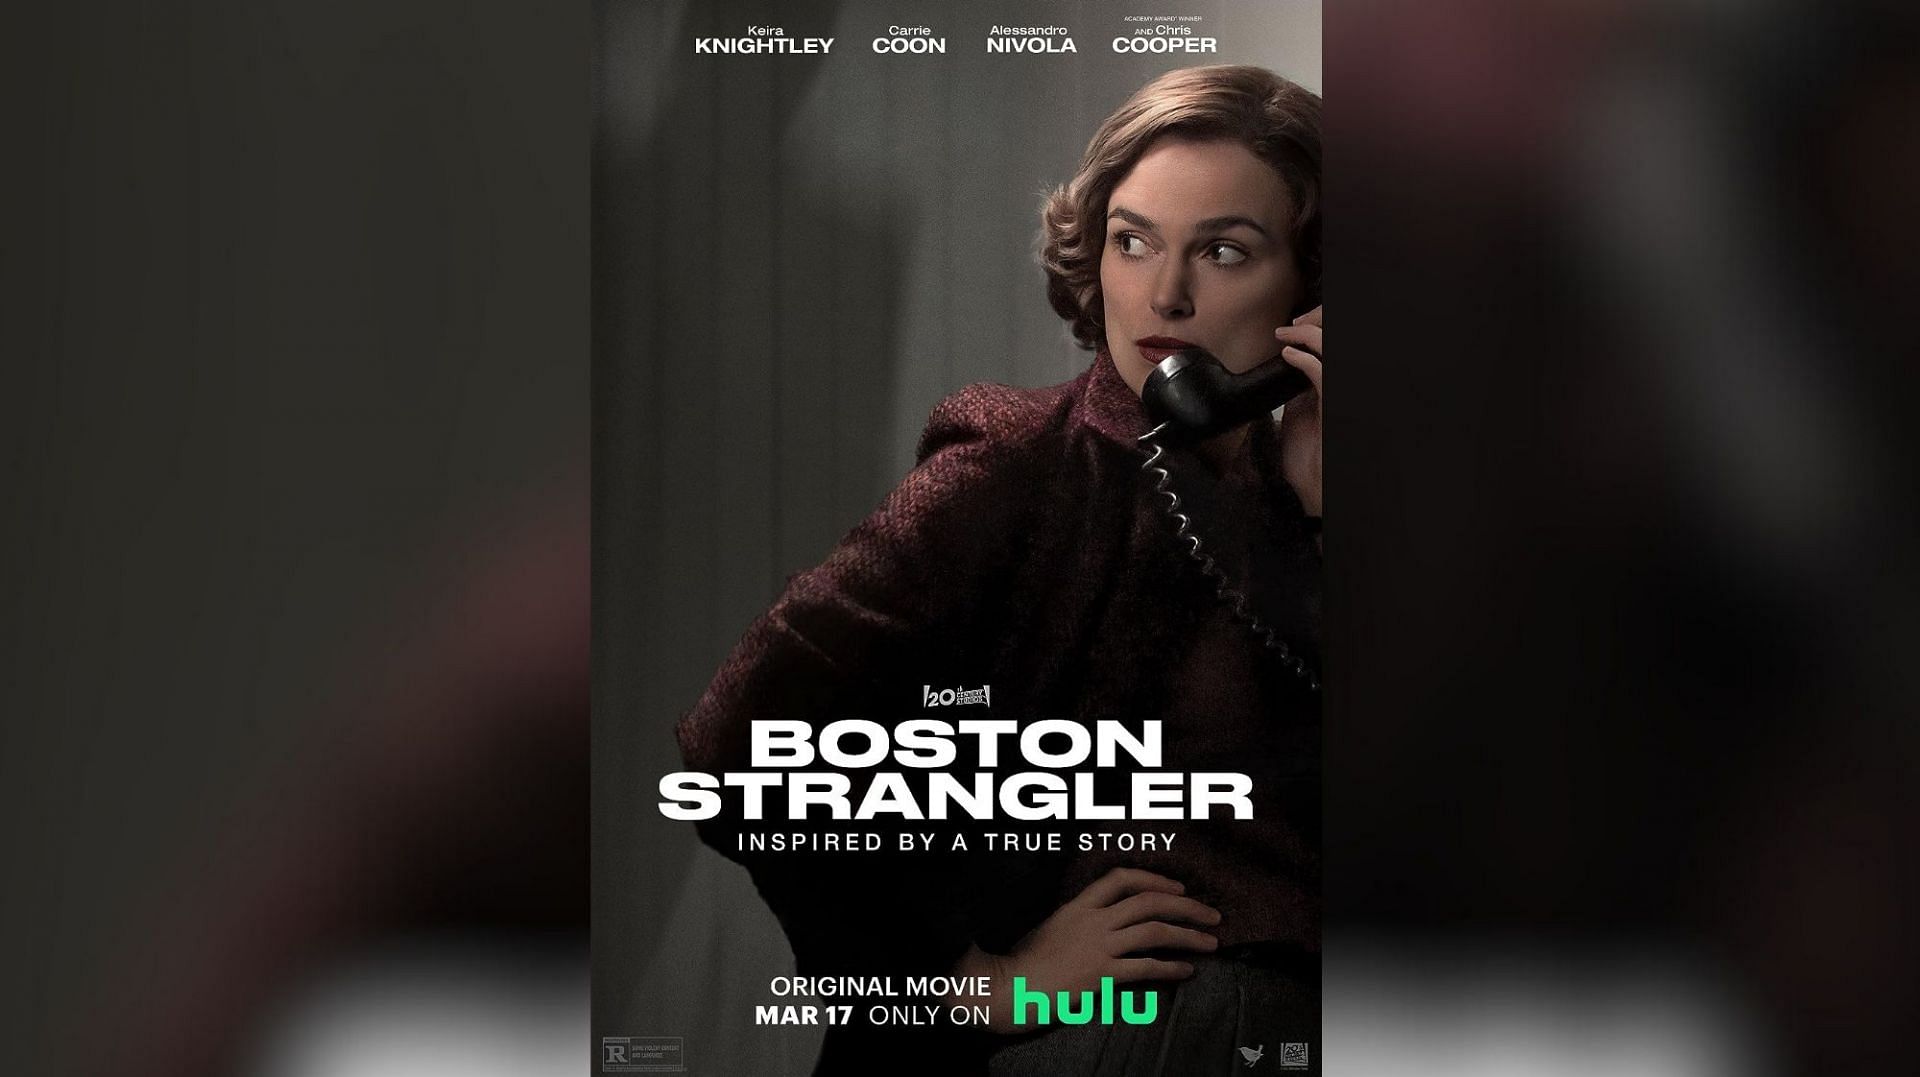 Boston Strangler (Image via Hulu)